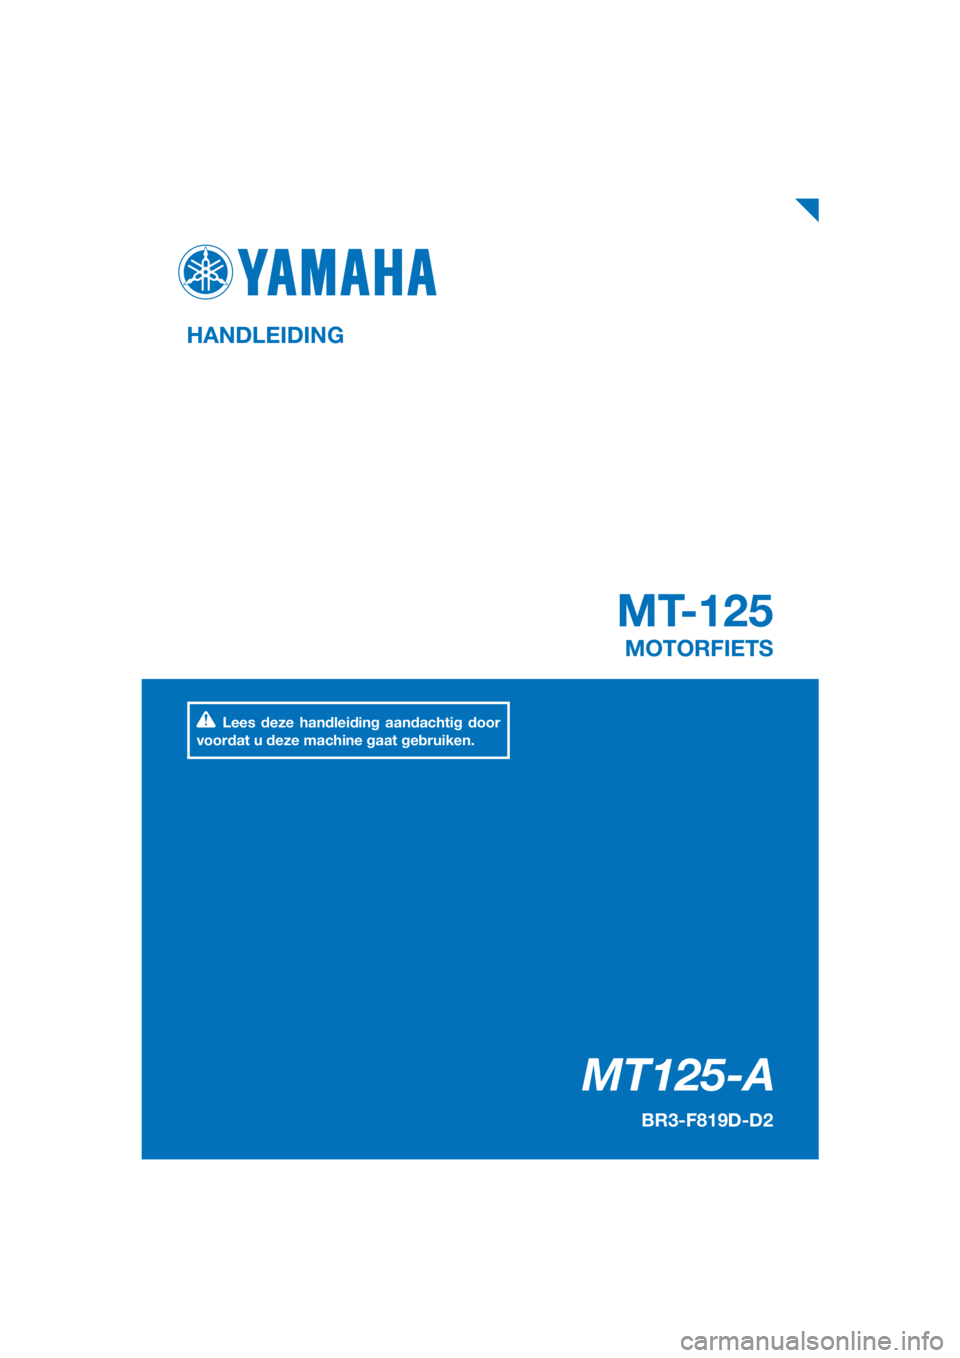 YAMAHA MT-125 2017  Instructieboekje (in Dutch) PANTONE285C
MT125-A
MT-125
HANDLEIDING
BR3-F819D-D2
MOTORFIETS
Lees deze handleiding aandachtig door 
voordat u deze machine gaat gebruiken.
[Dutch  (D)] 